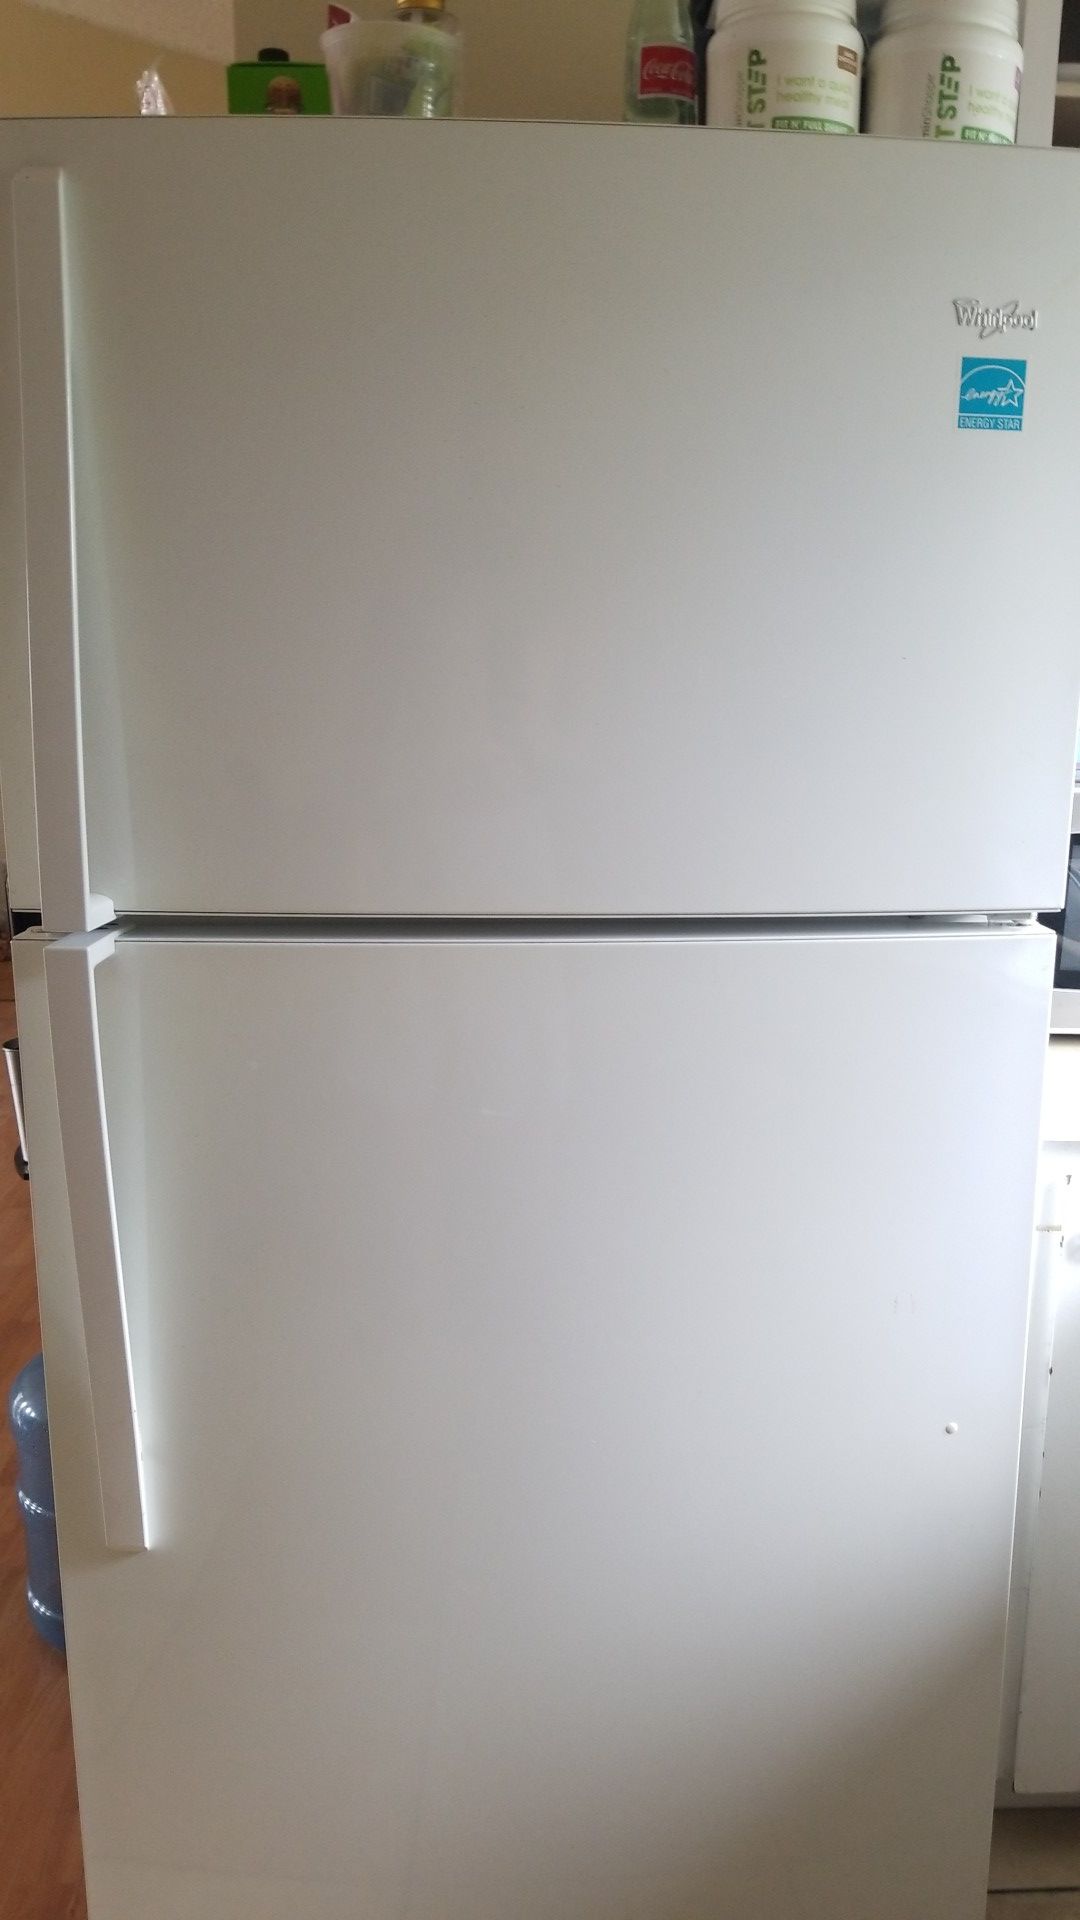 Whirlpool refrigerator